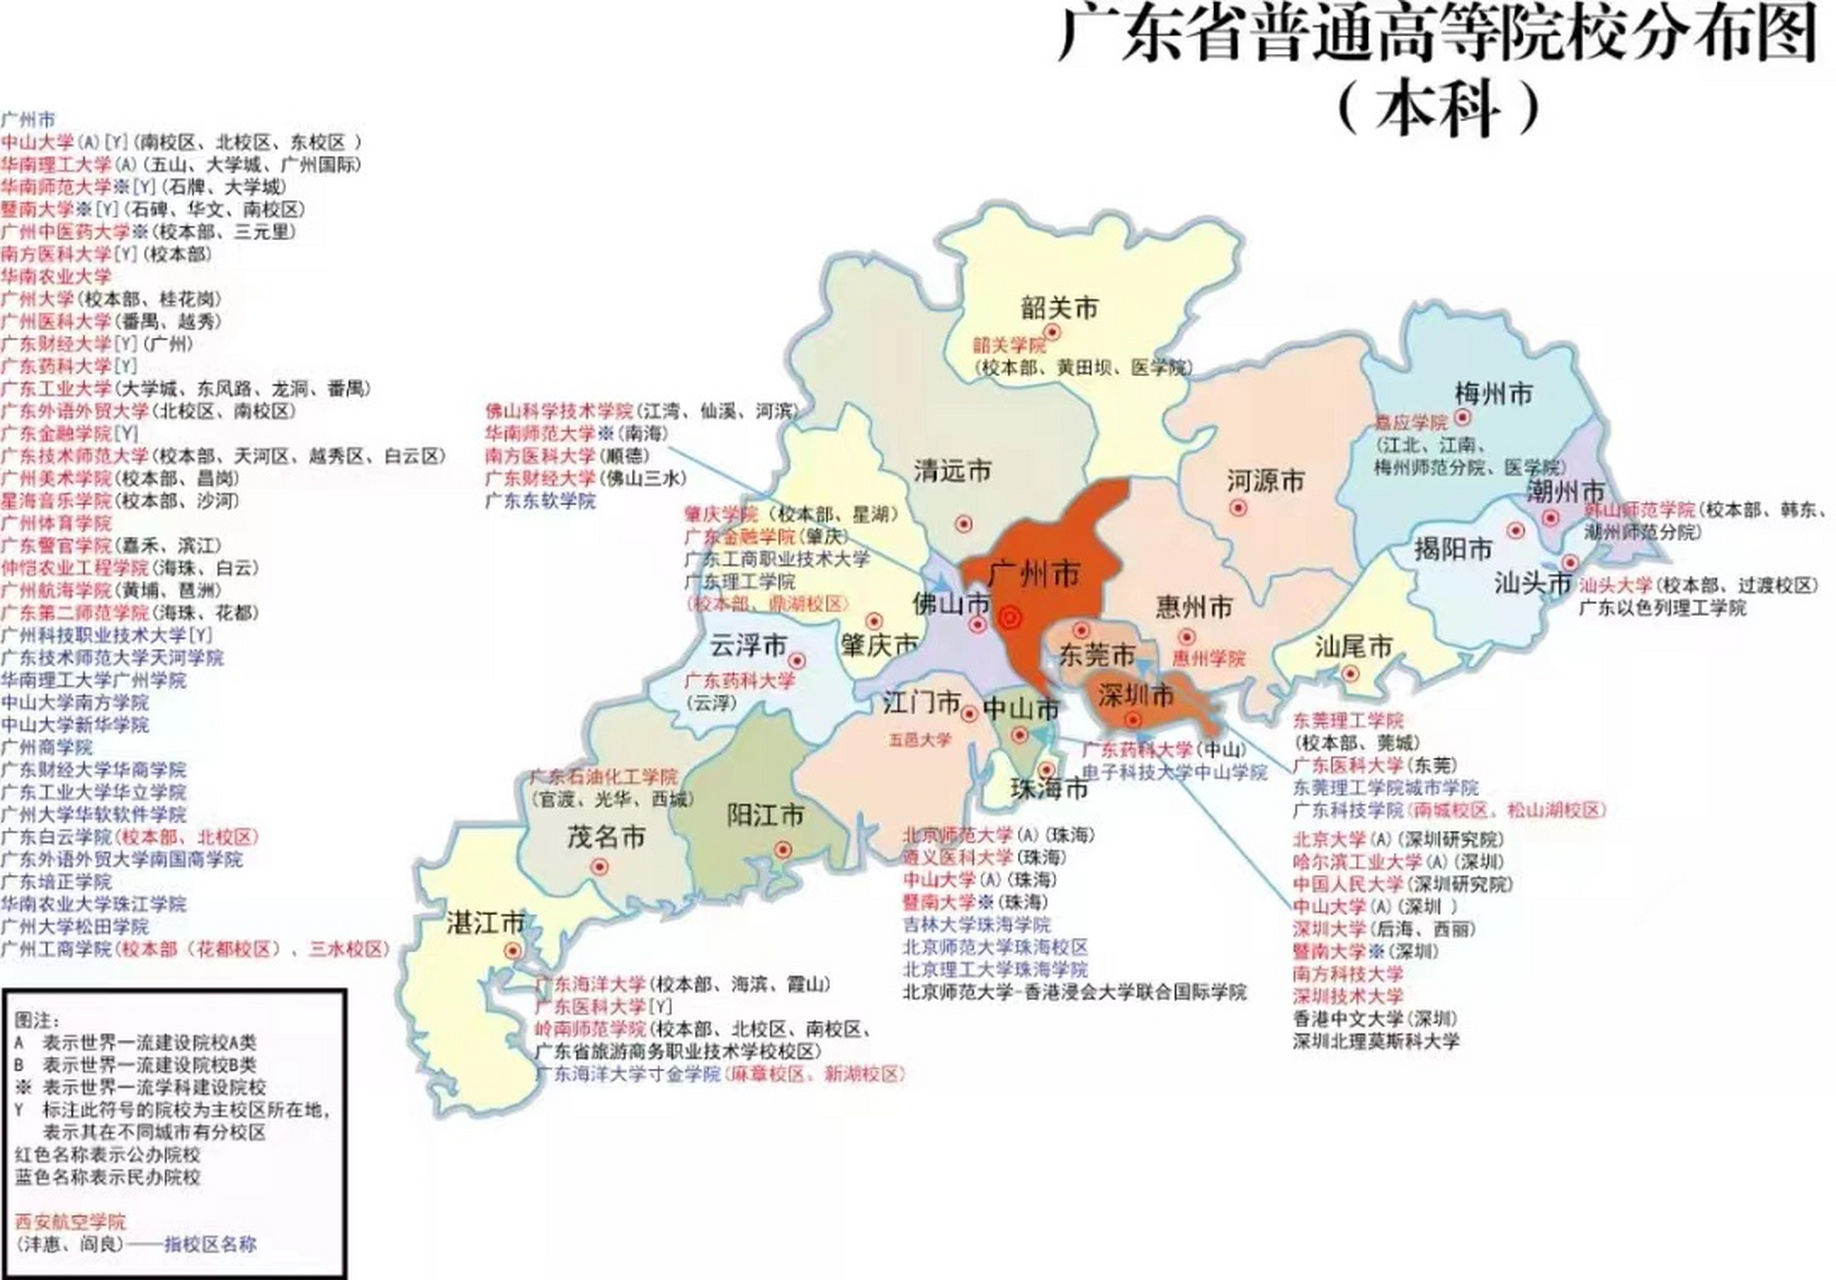 广东省高校地图,你想考哪所学校?